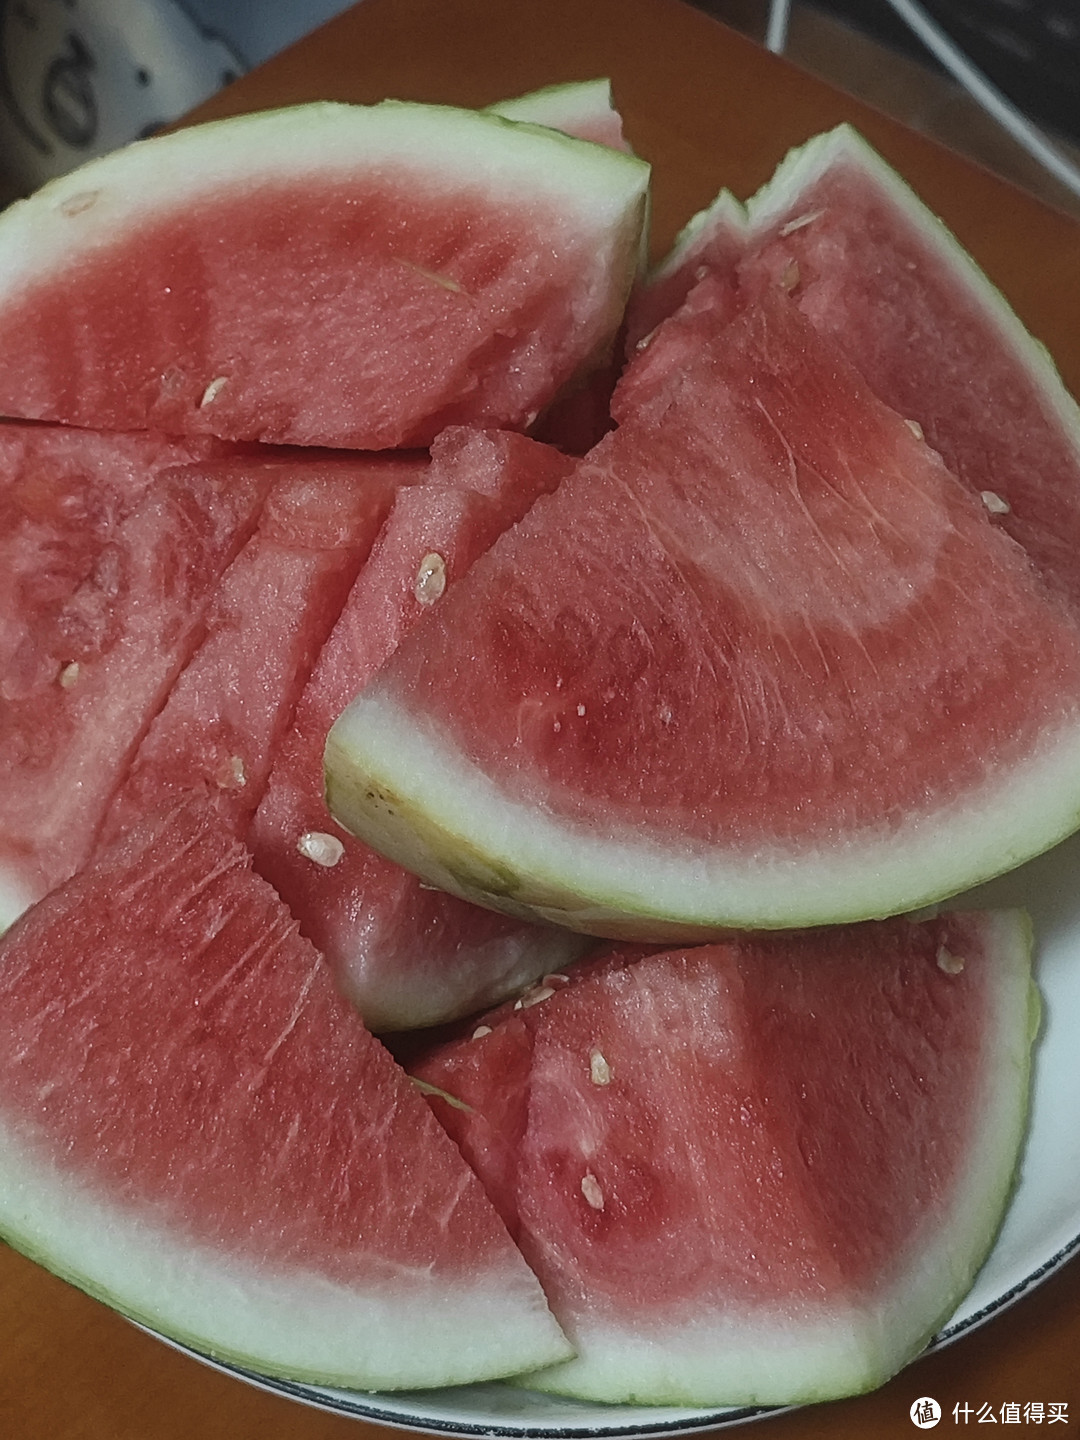 夏天必吃的水果之一就是西瓜